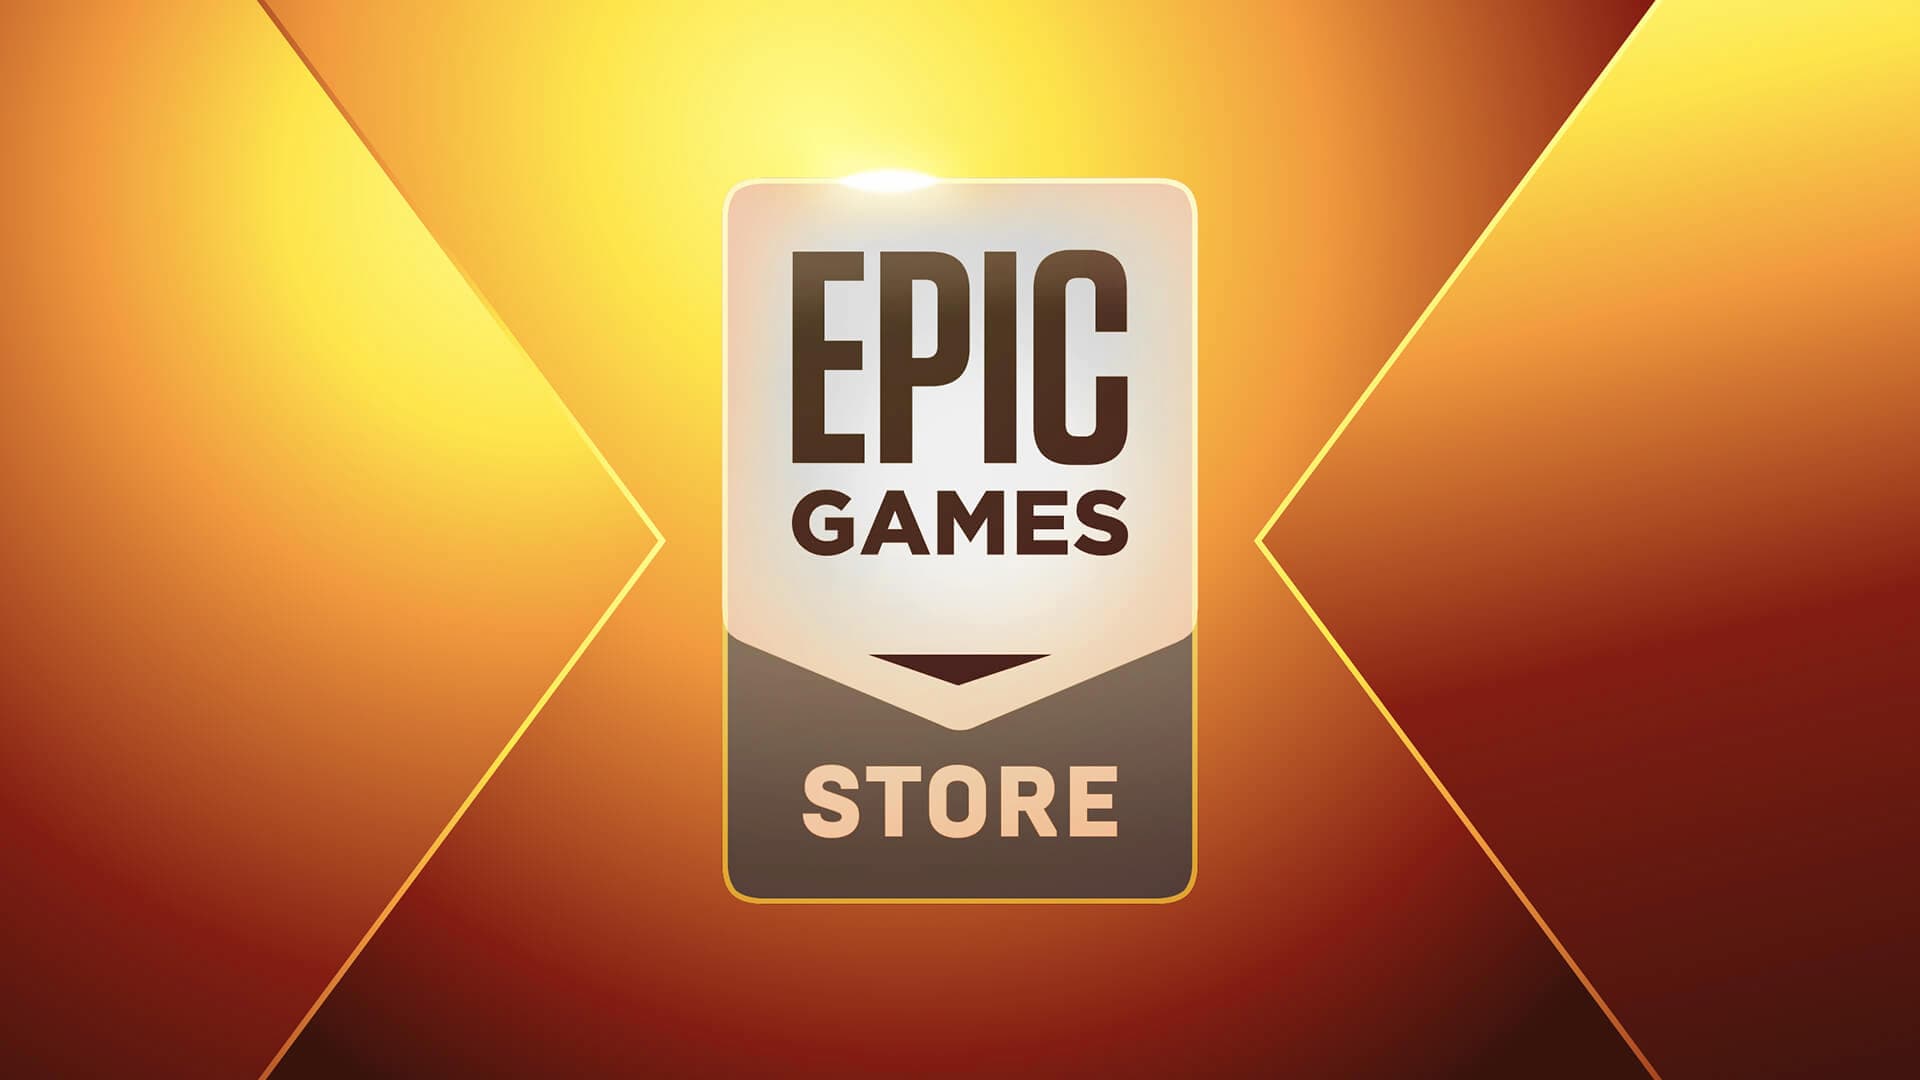 Epic Games deve dar 15 jogos grátis a partir de 15/12